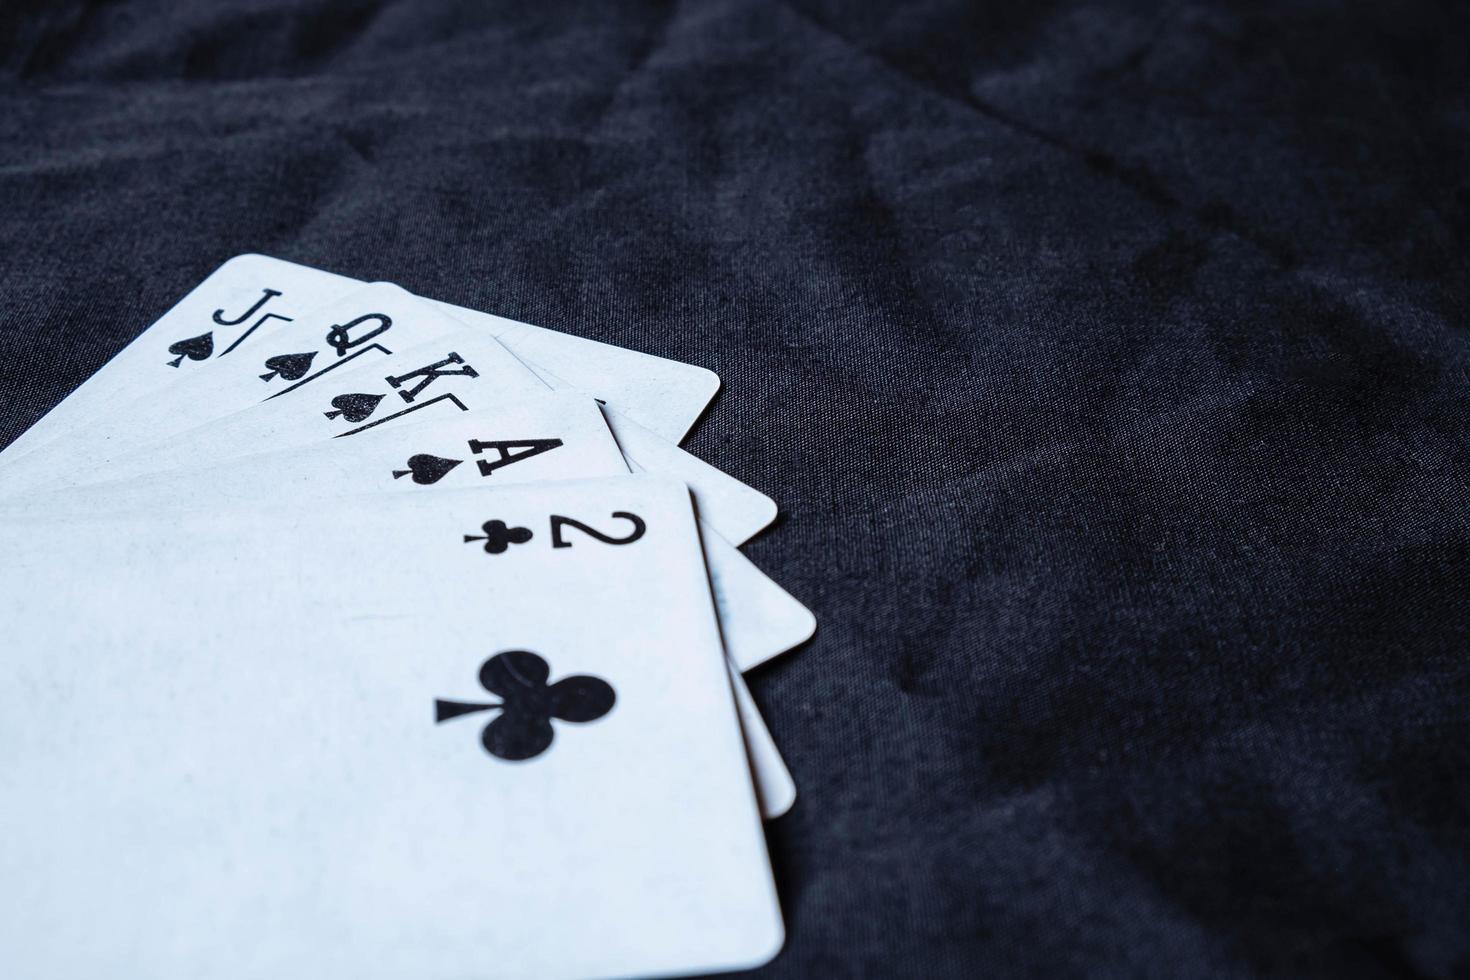 juego de cartas sobre un fondo de tela negra foto